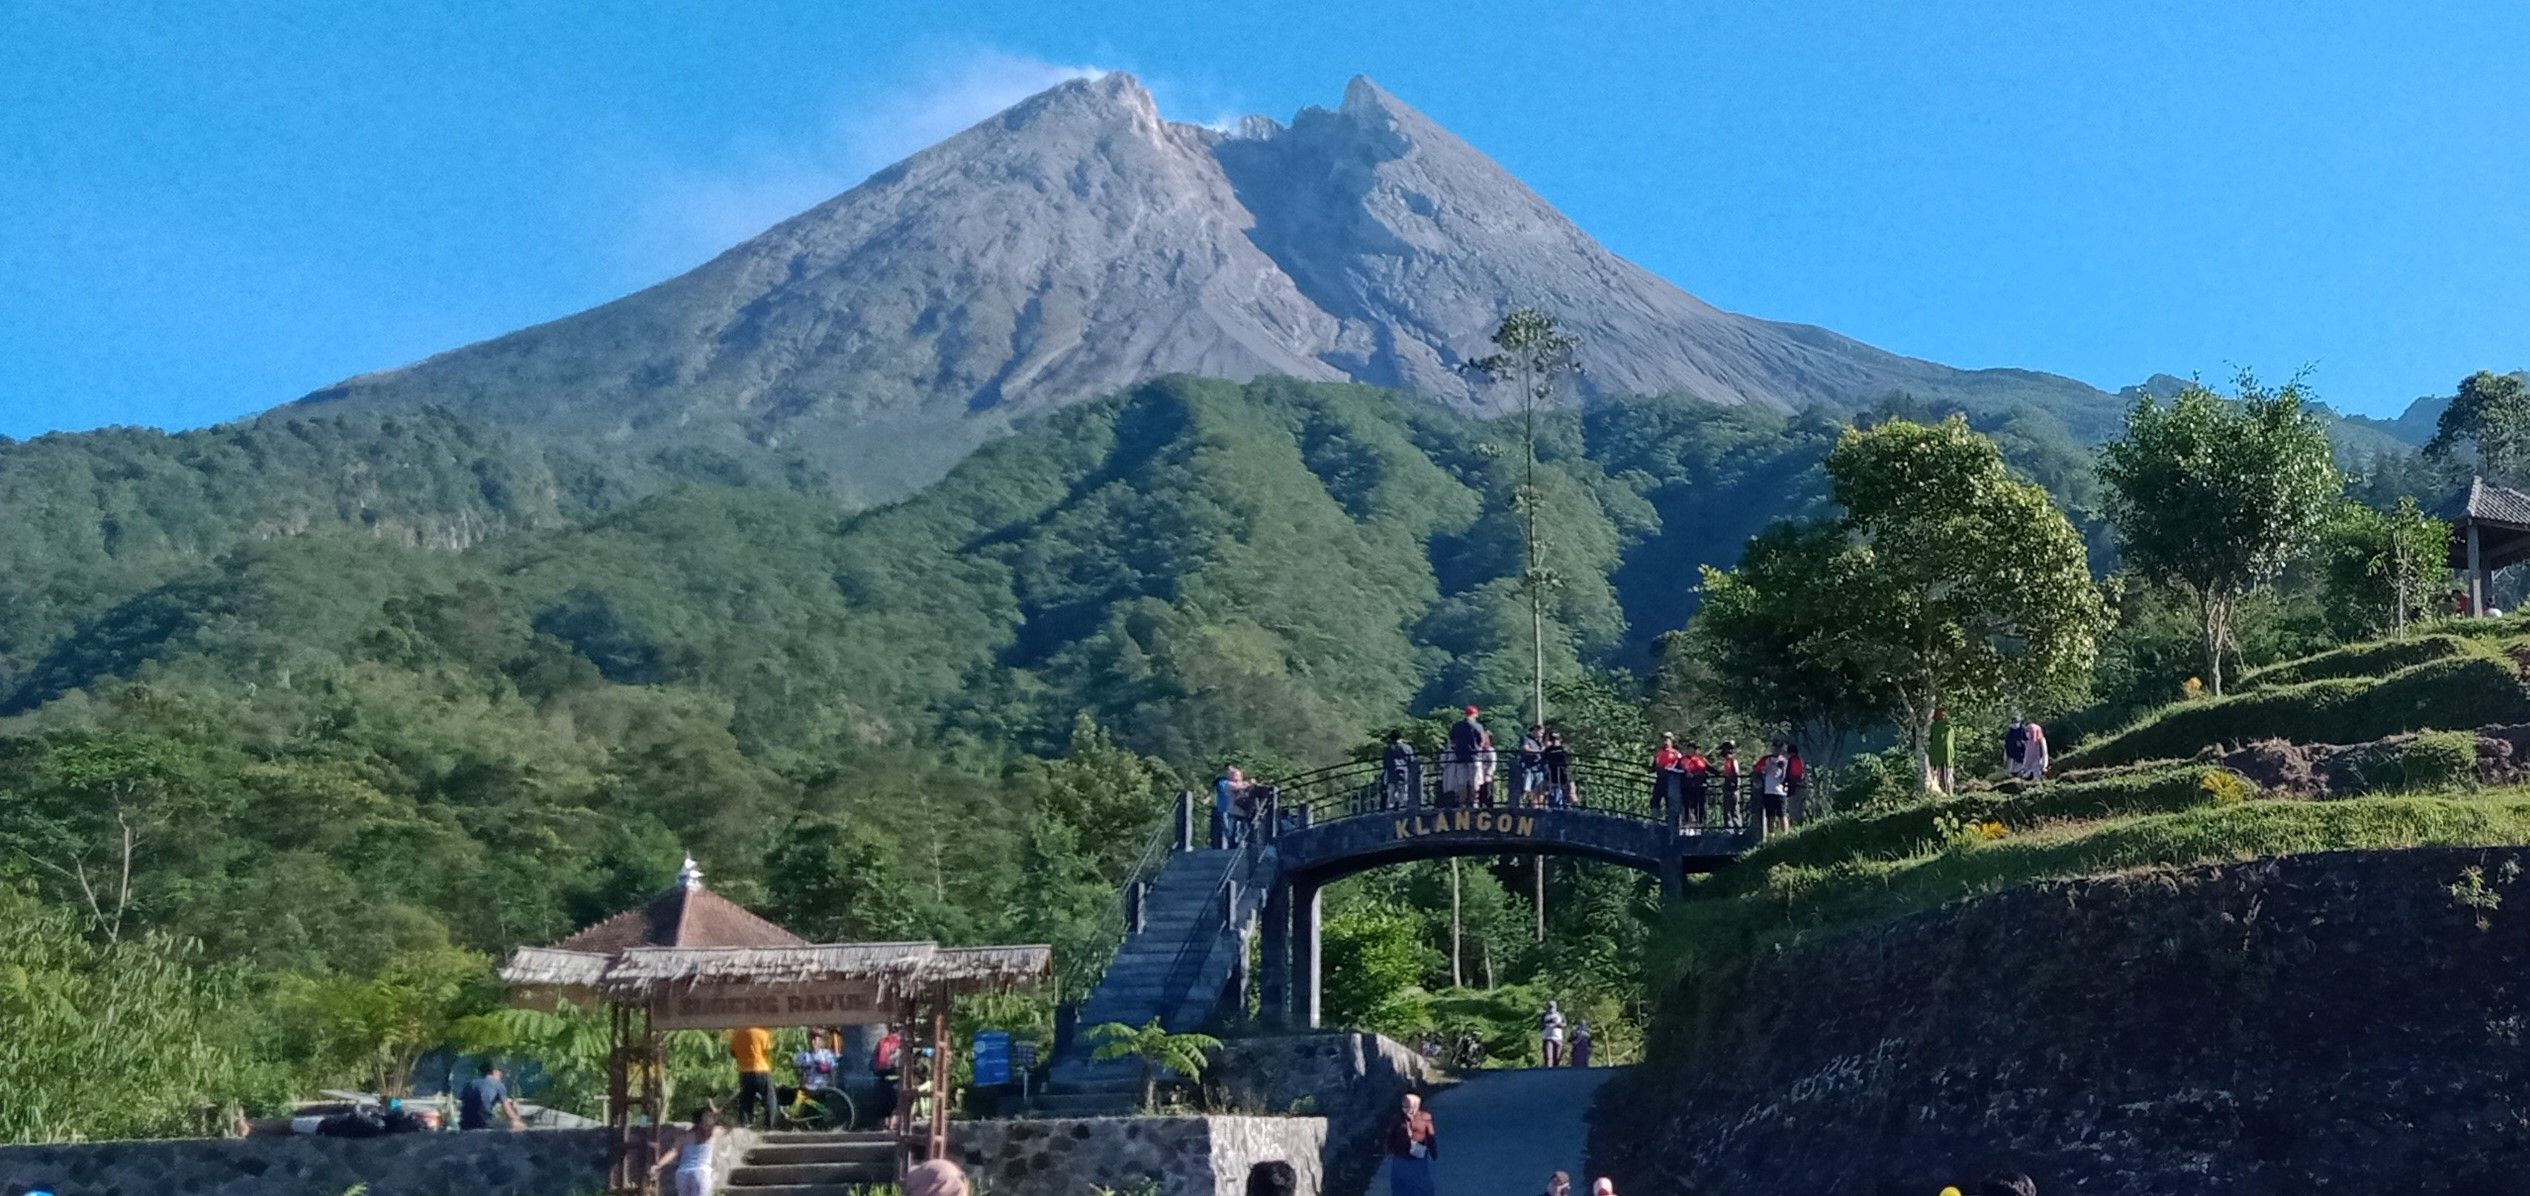 Status Siaga Gunung Merapi, Pemerintah Tutup 4 Wisata di Sleman dan